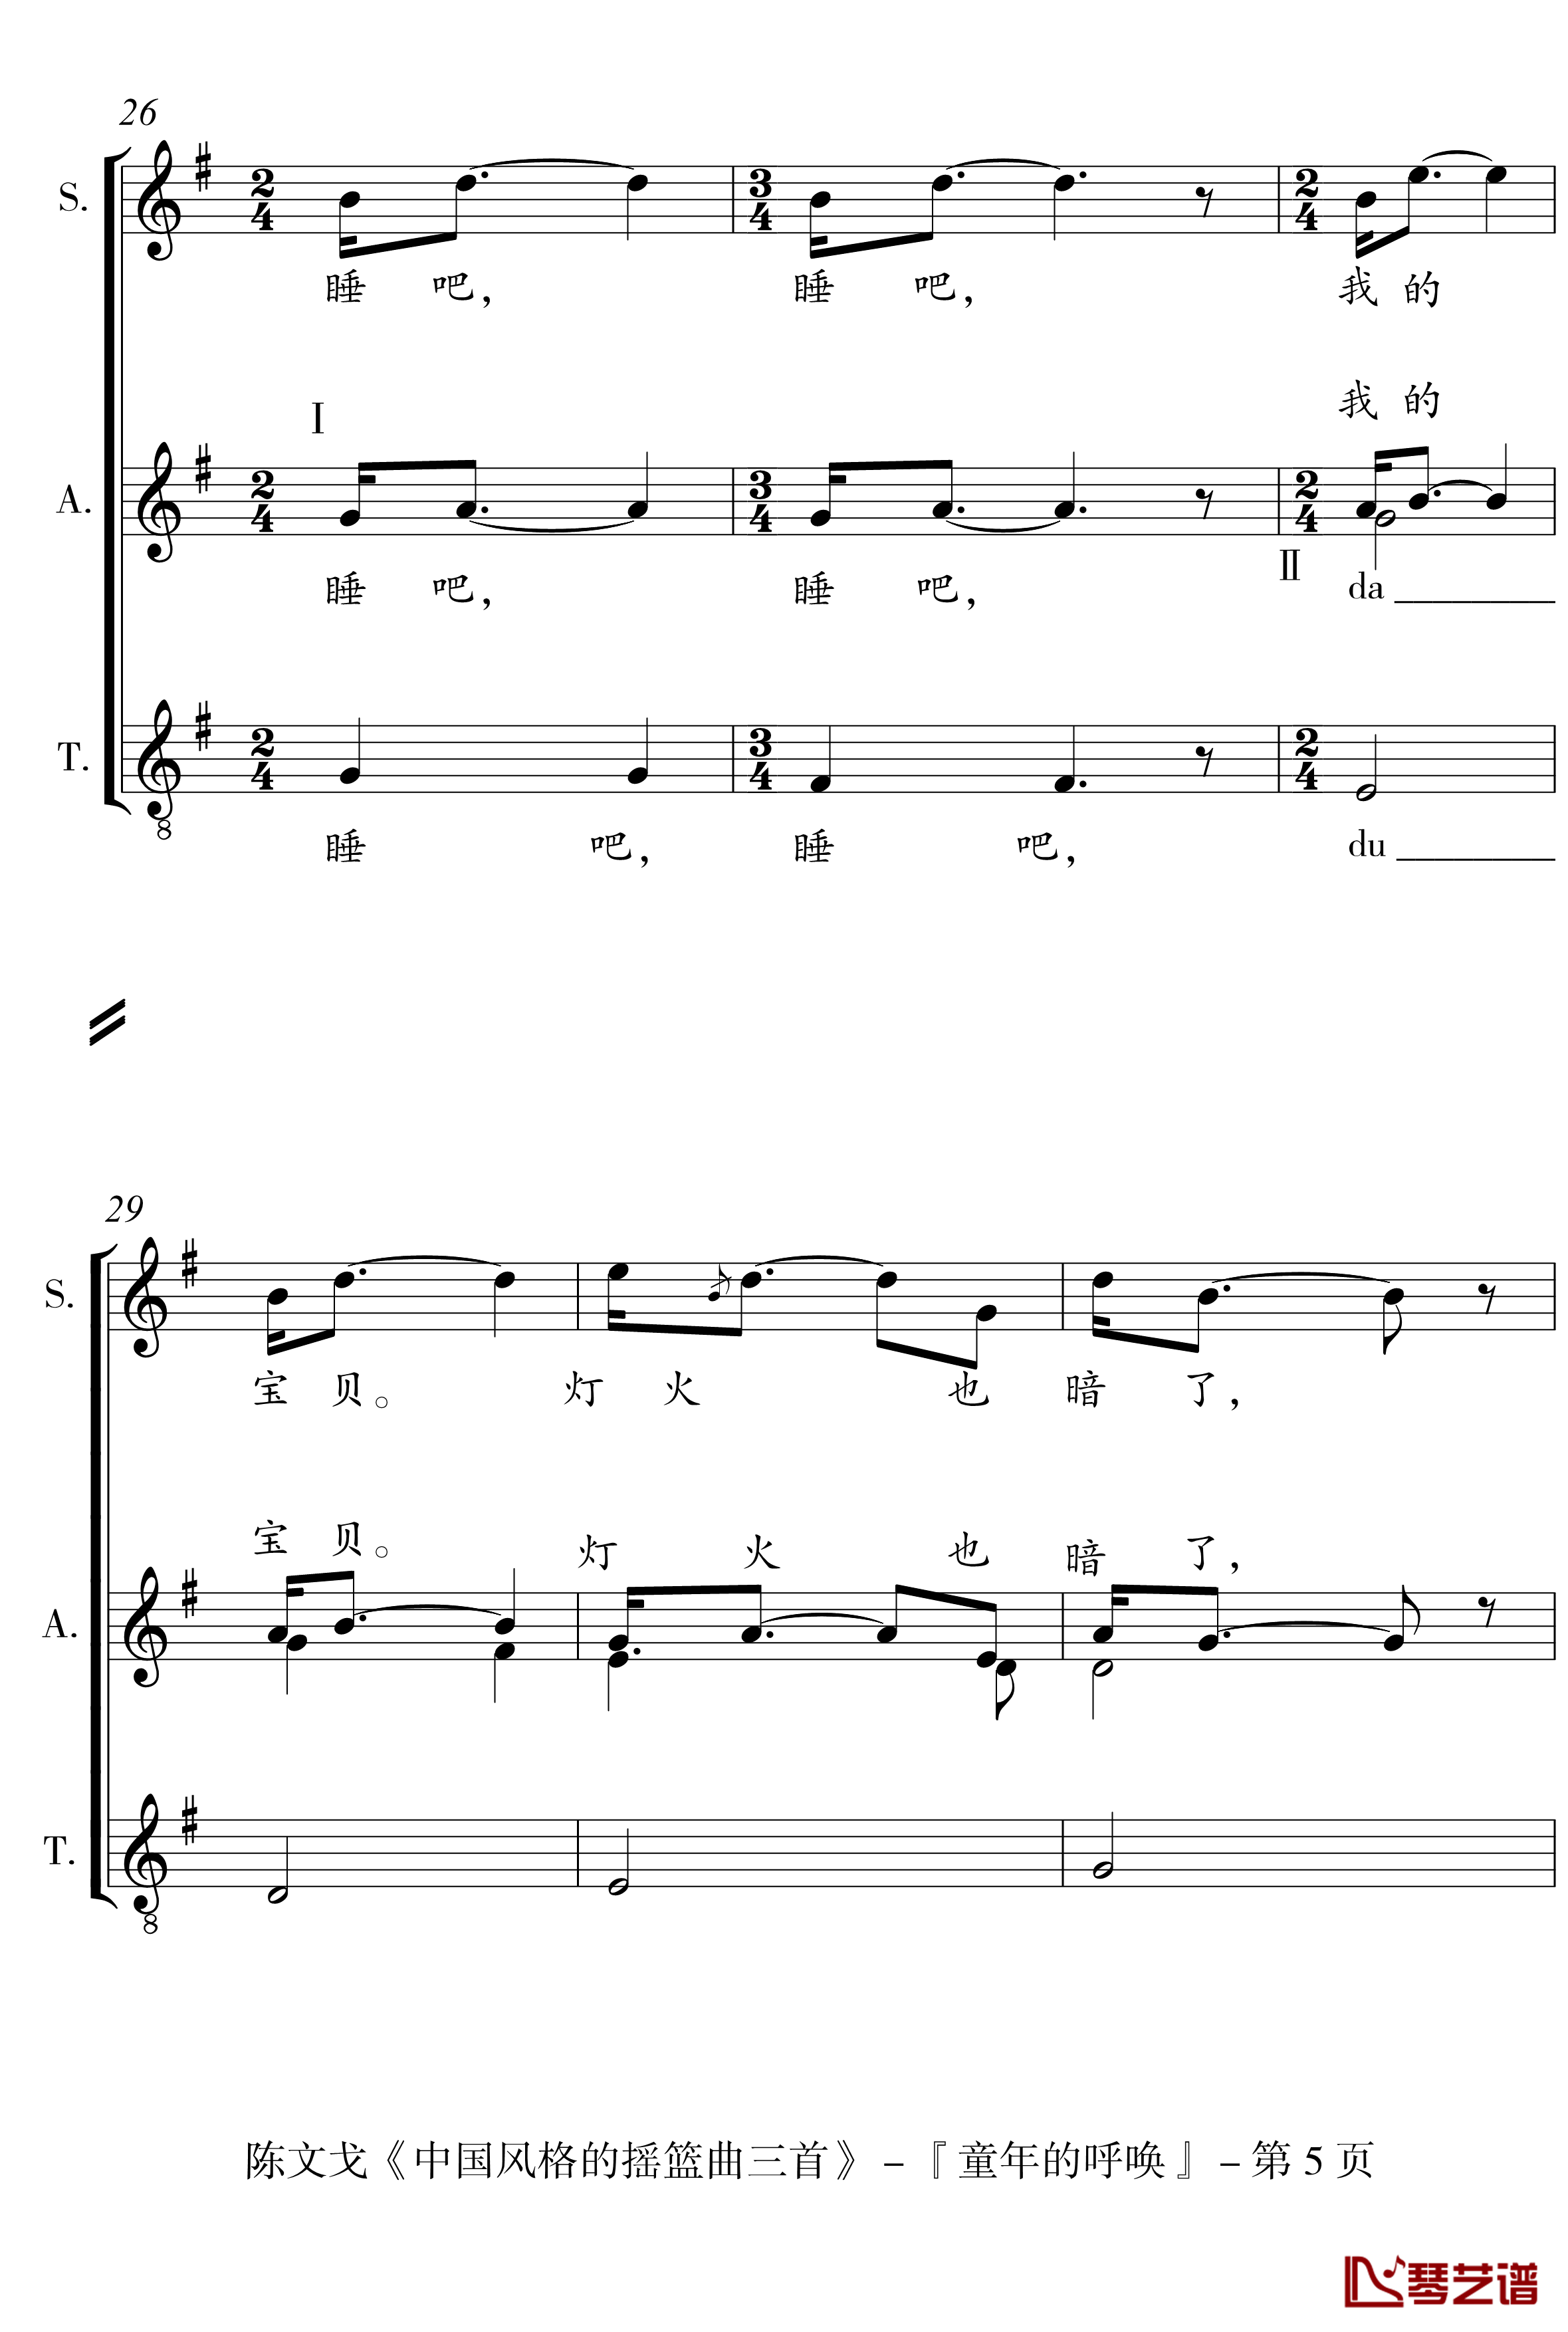 中国风格的合唱摇篮曲三首钢琴谱-I, II, III-陈文戈5